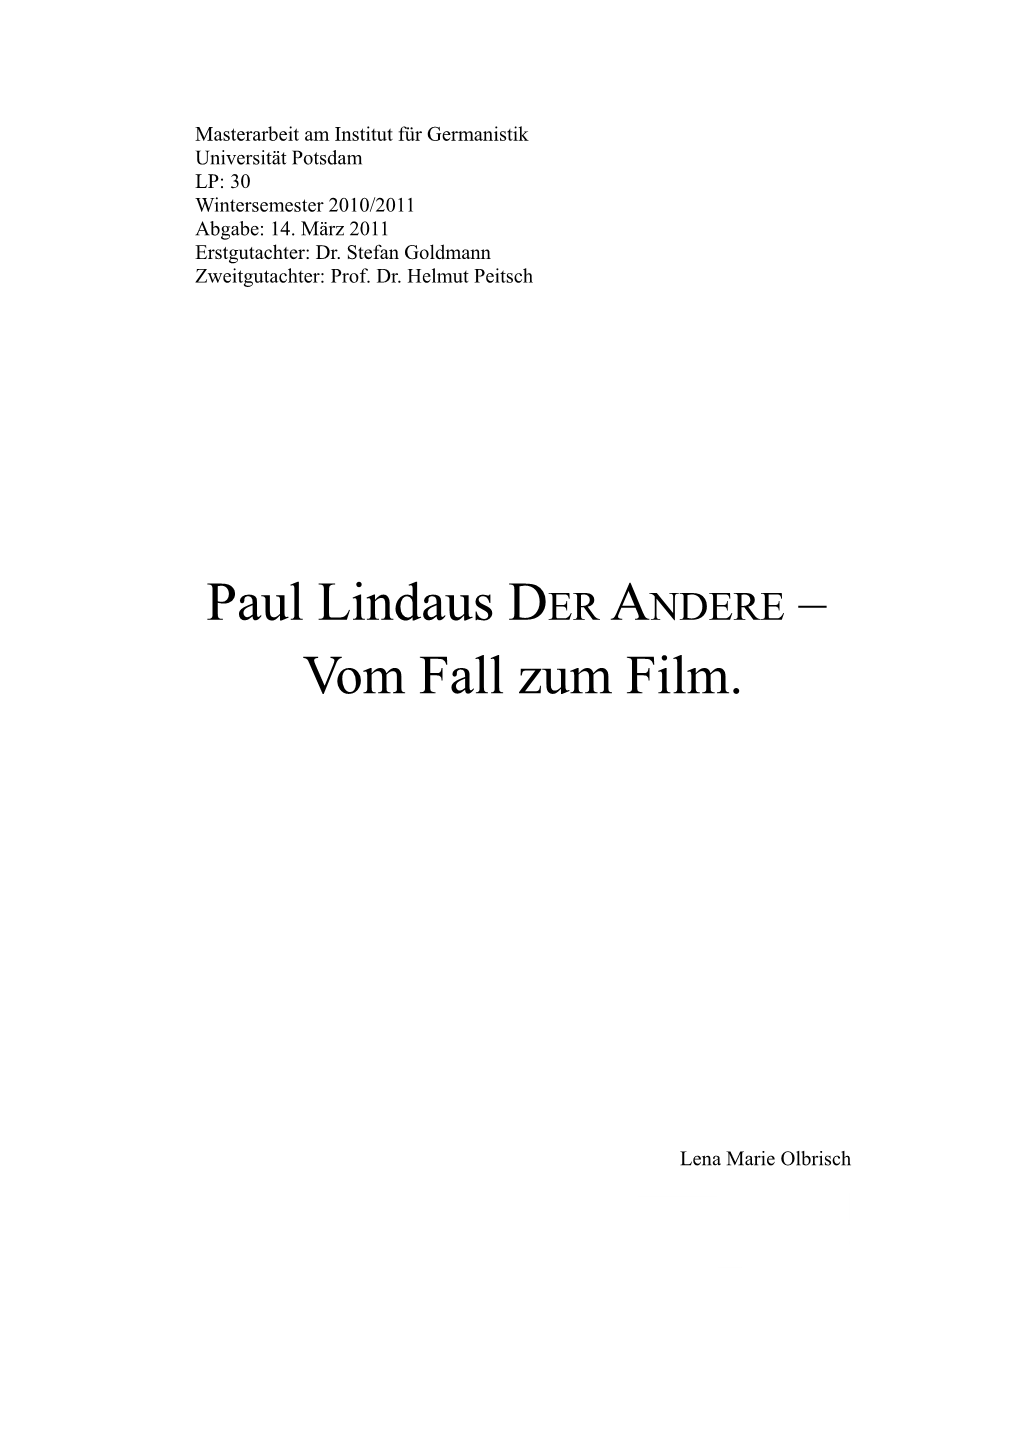 Paul Lindaus Der Andere : Vom Fall Zum Film